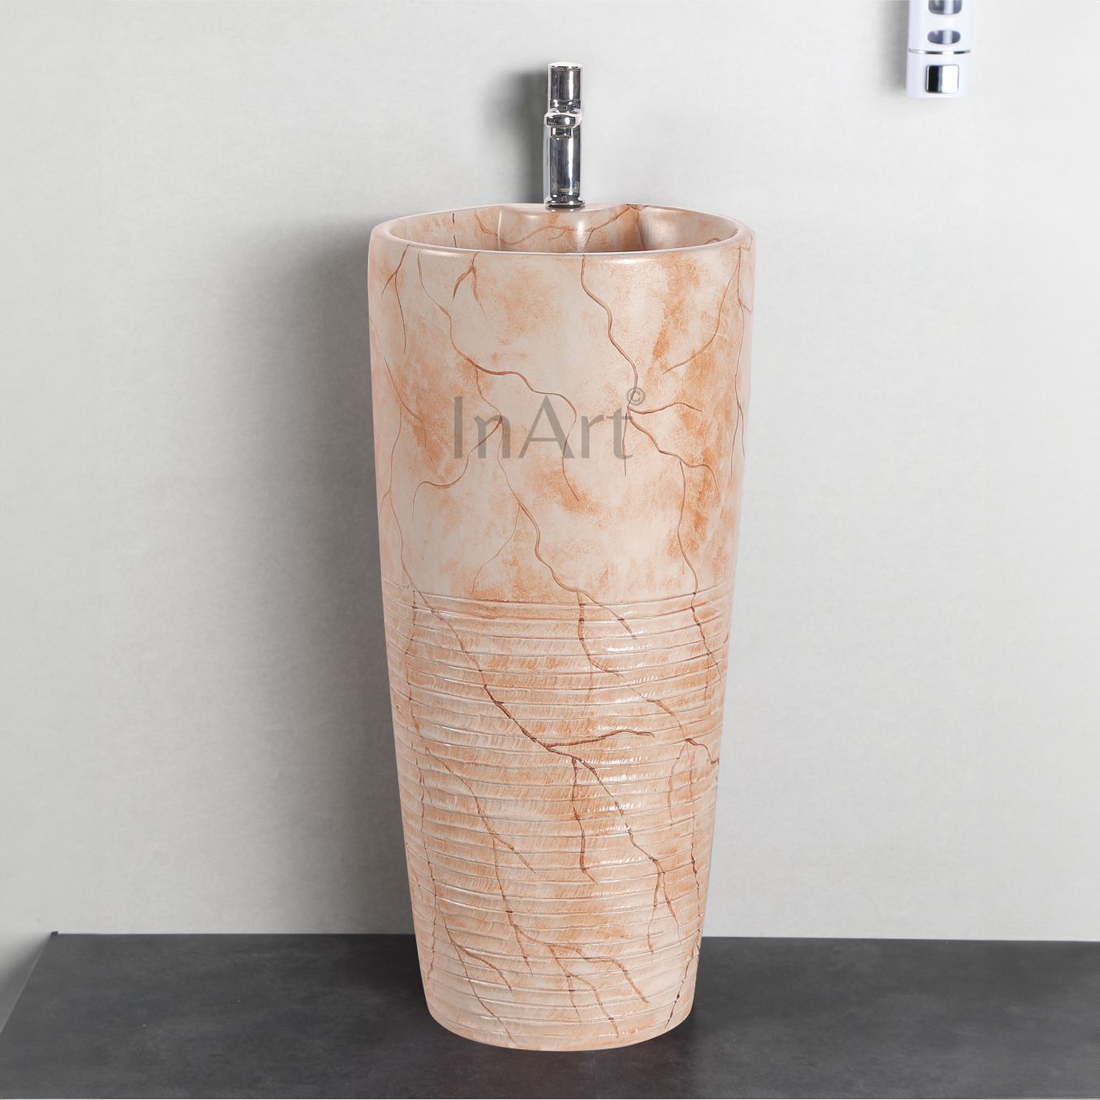 InArt Ceramic One Piece Pedestal Wash Basin Free Standing Round Orange Matt Marble Finish 38 X 38 CM - InArt-Studio